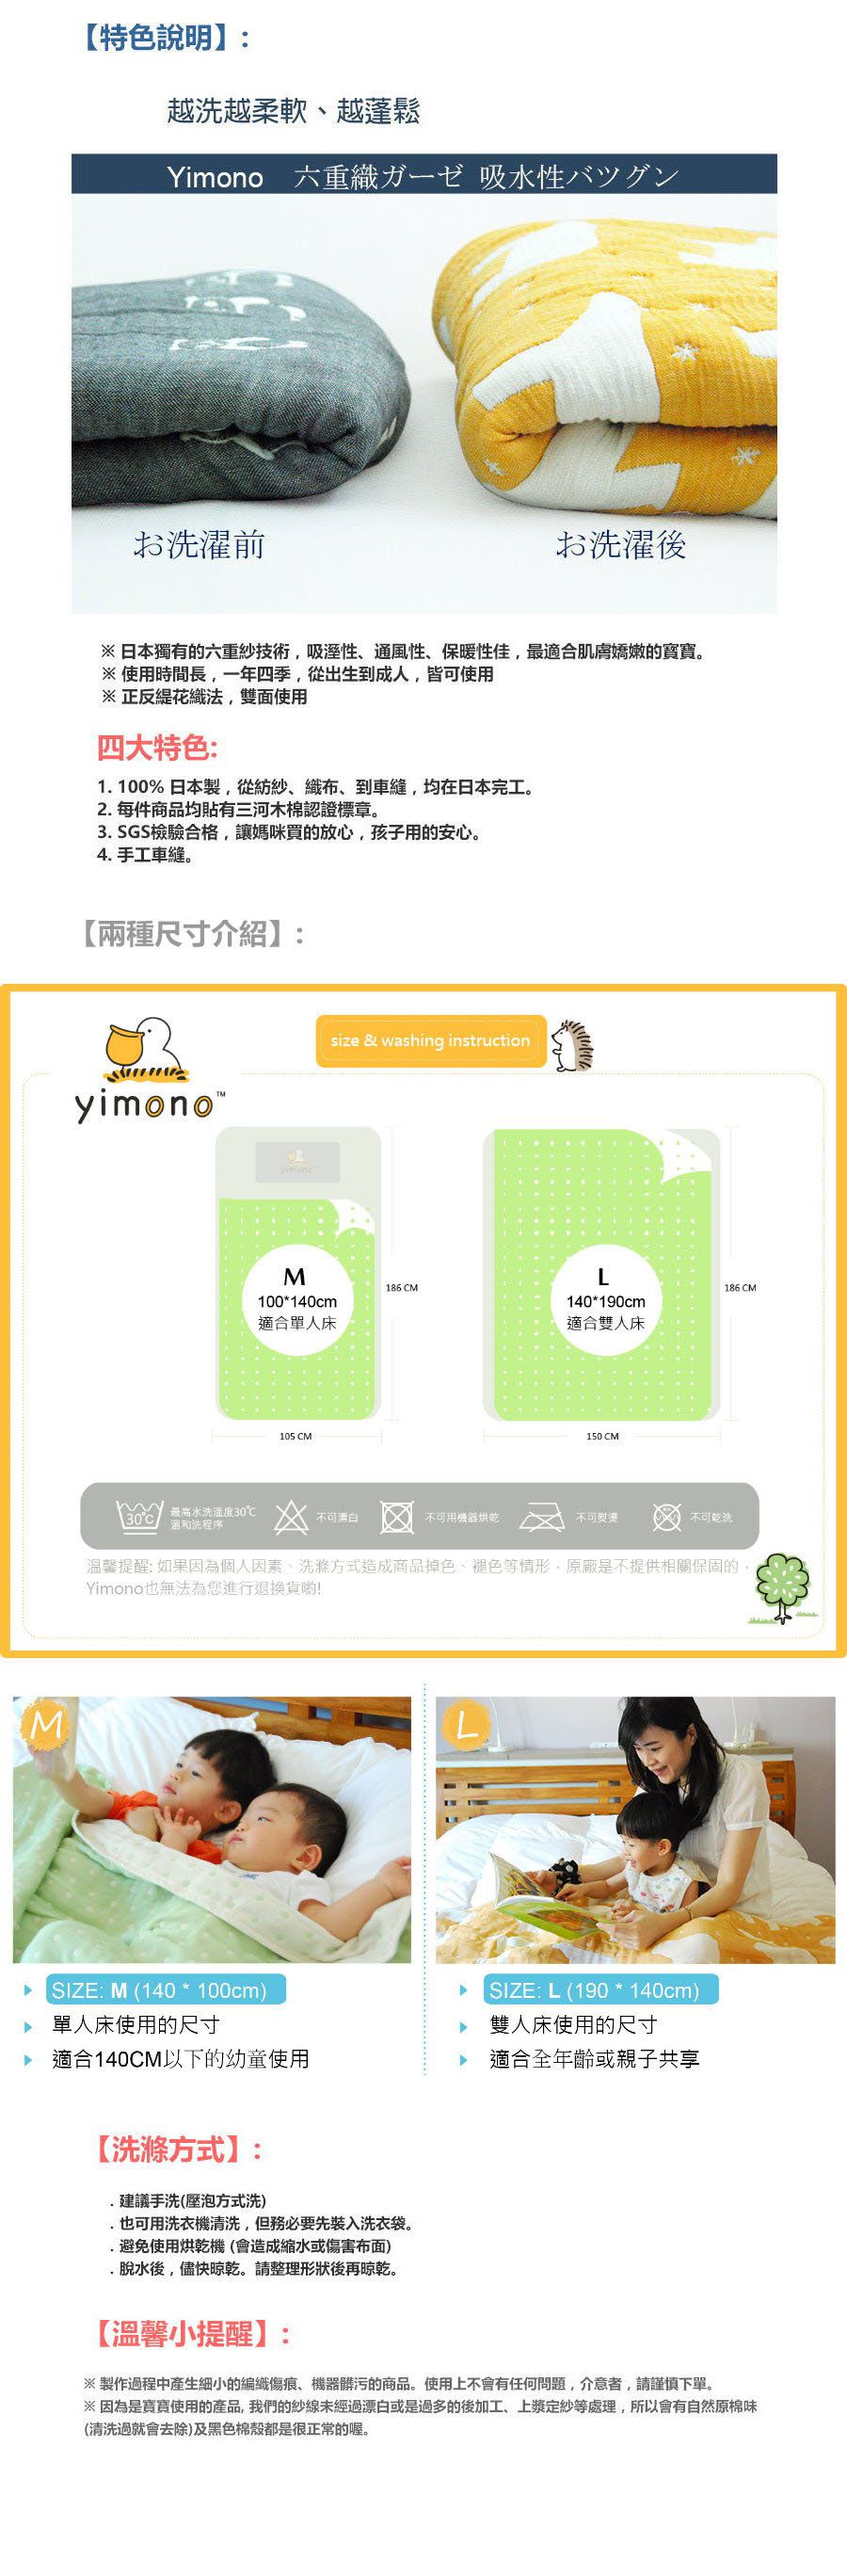 日本製YIMONO六層紗呼吸被 (彩色木馬)-M-140cmx100cm 